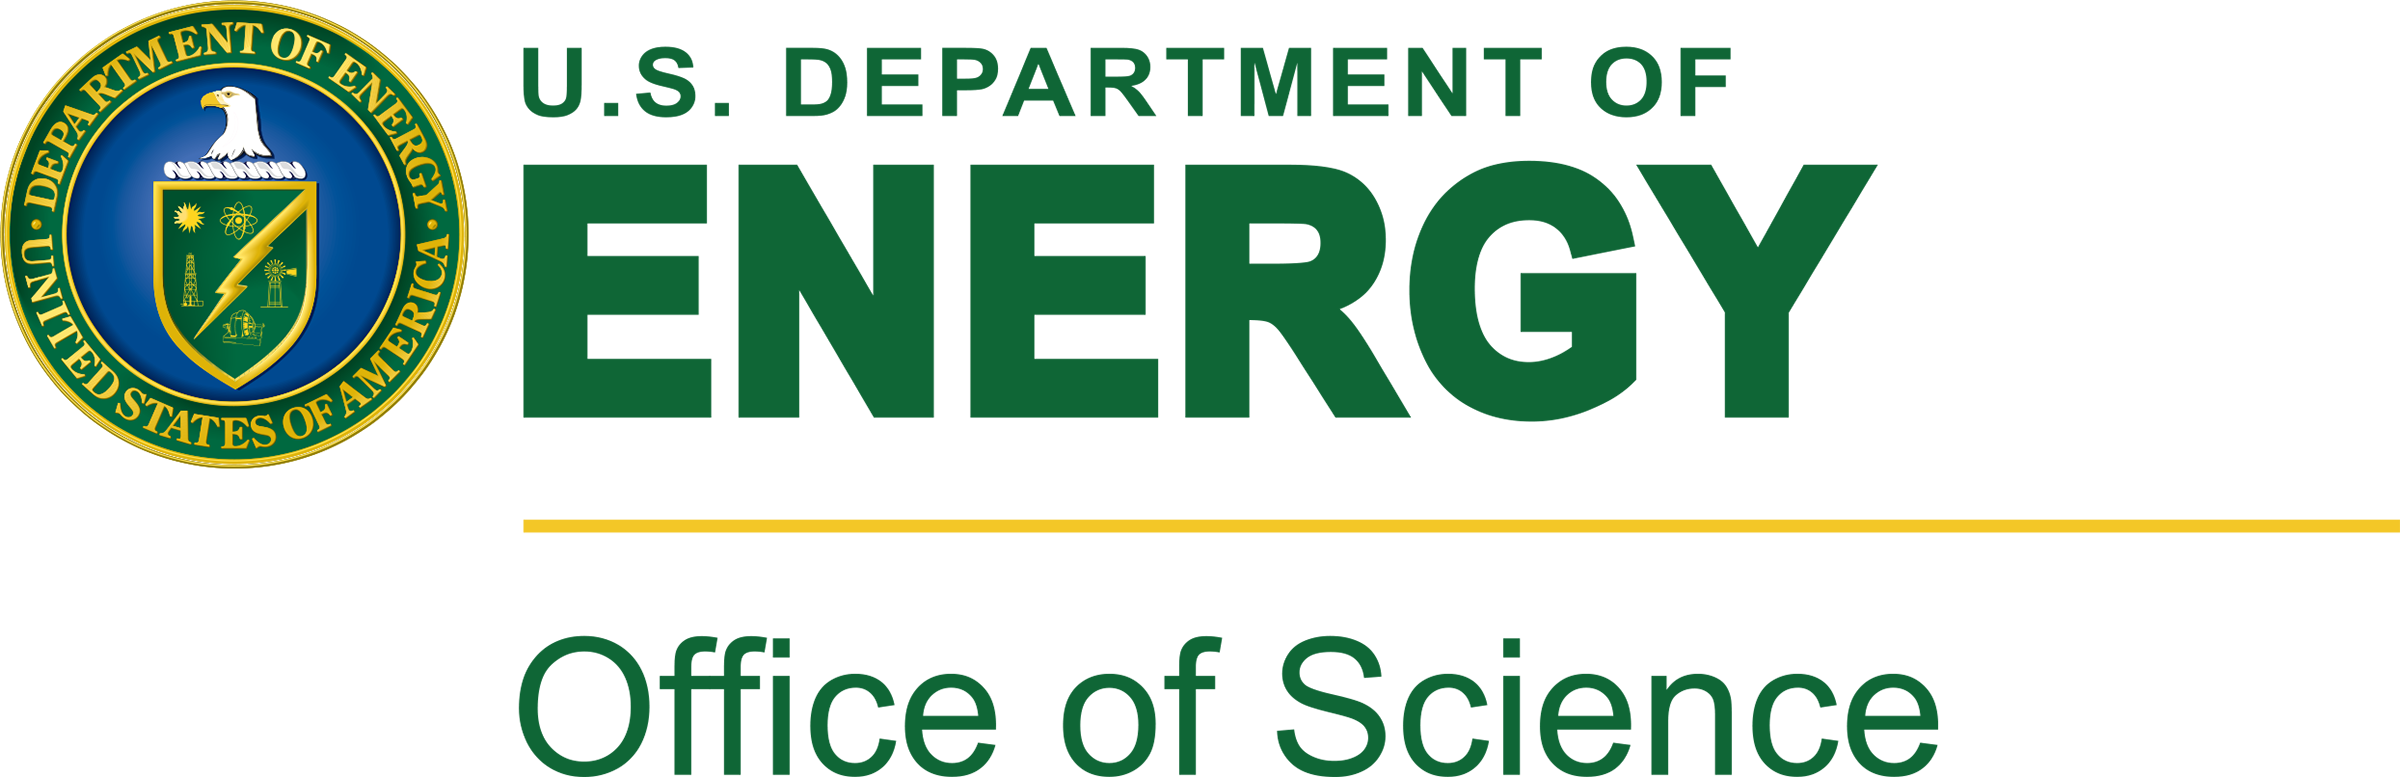 DOE Office of Science logo